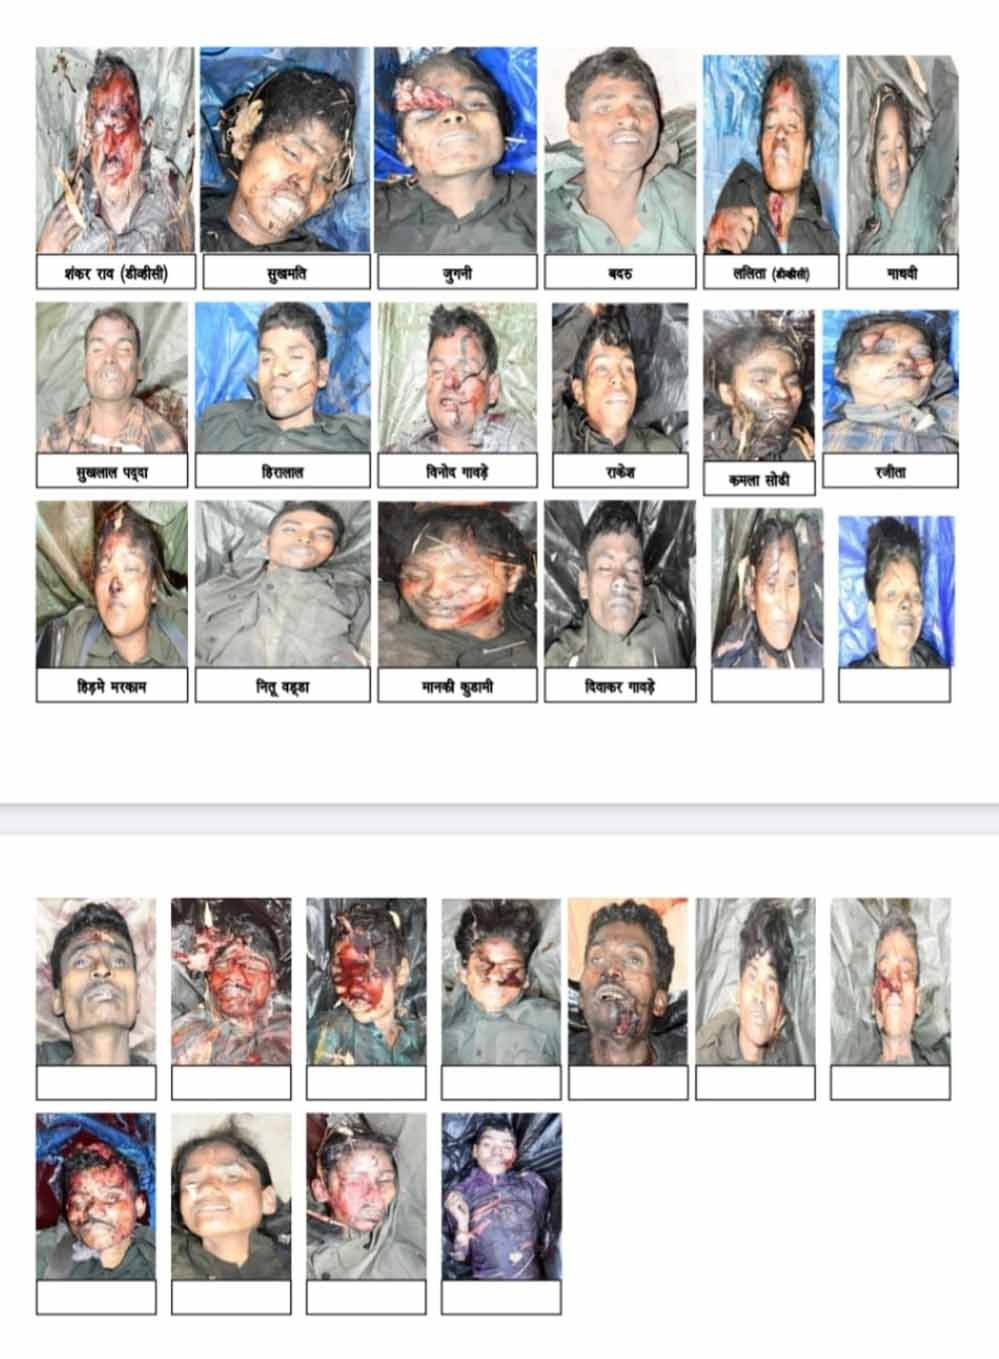 कांकेर मुठभेड़: मारे गये 29 में से 16 नक्सलियों की पहचान, ज्यादातर नक्सली दक्षिण बस्तर निवासी